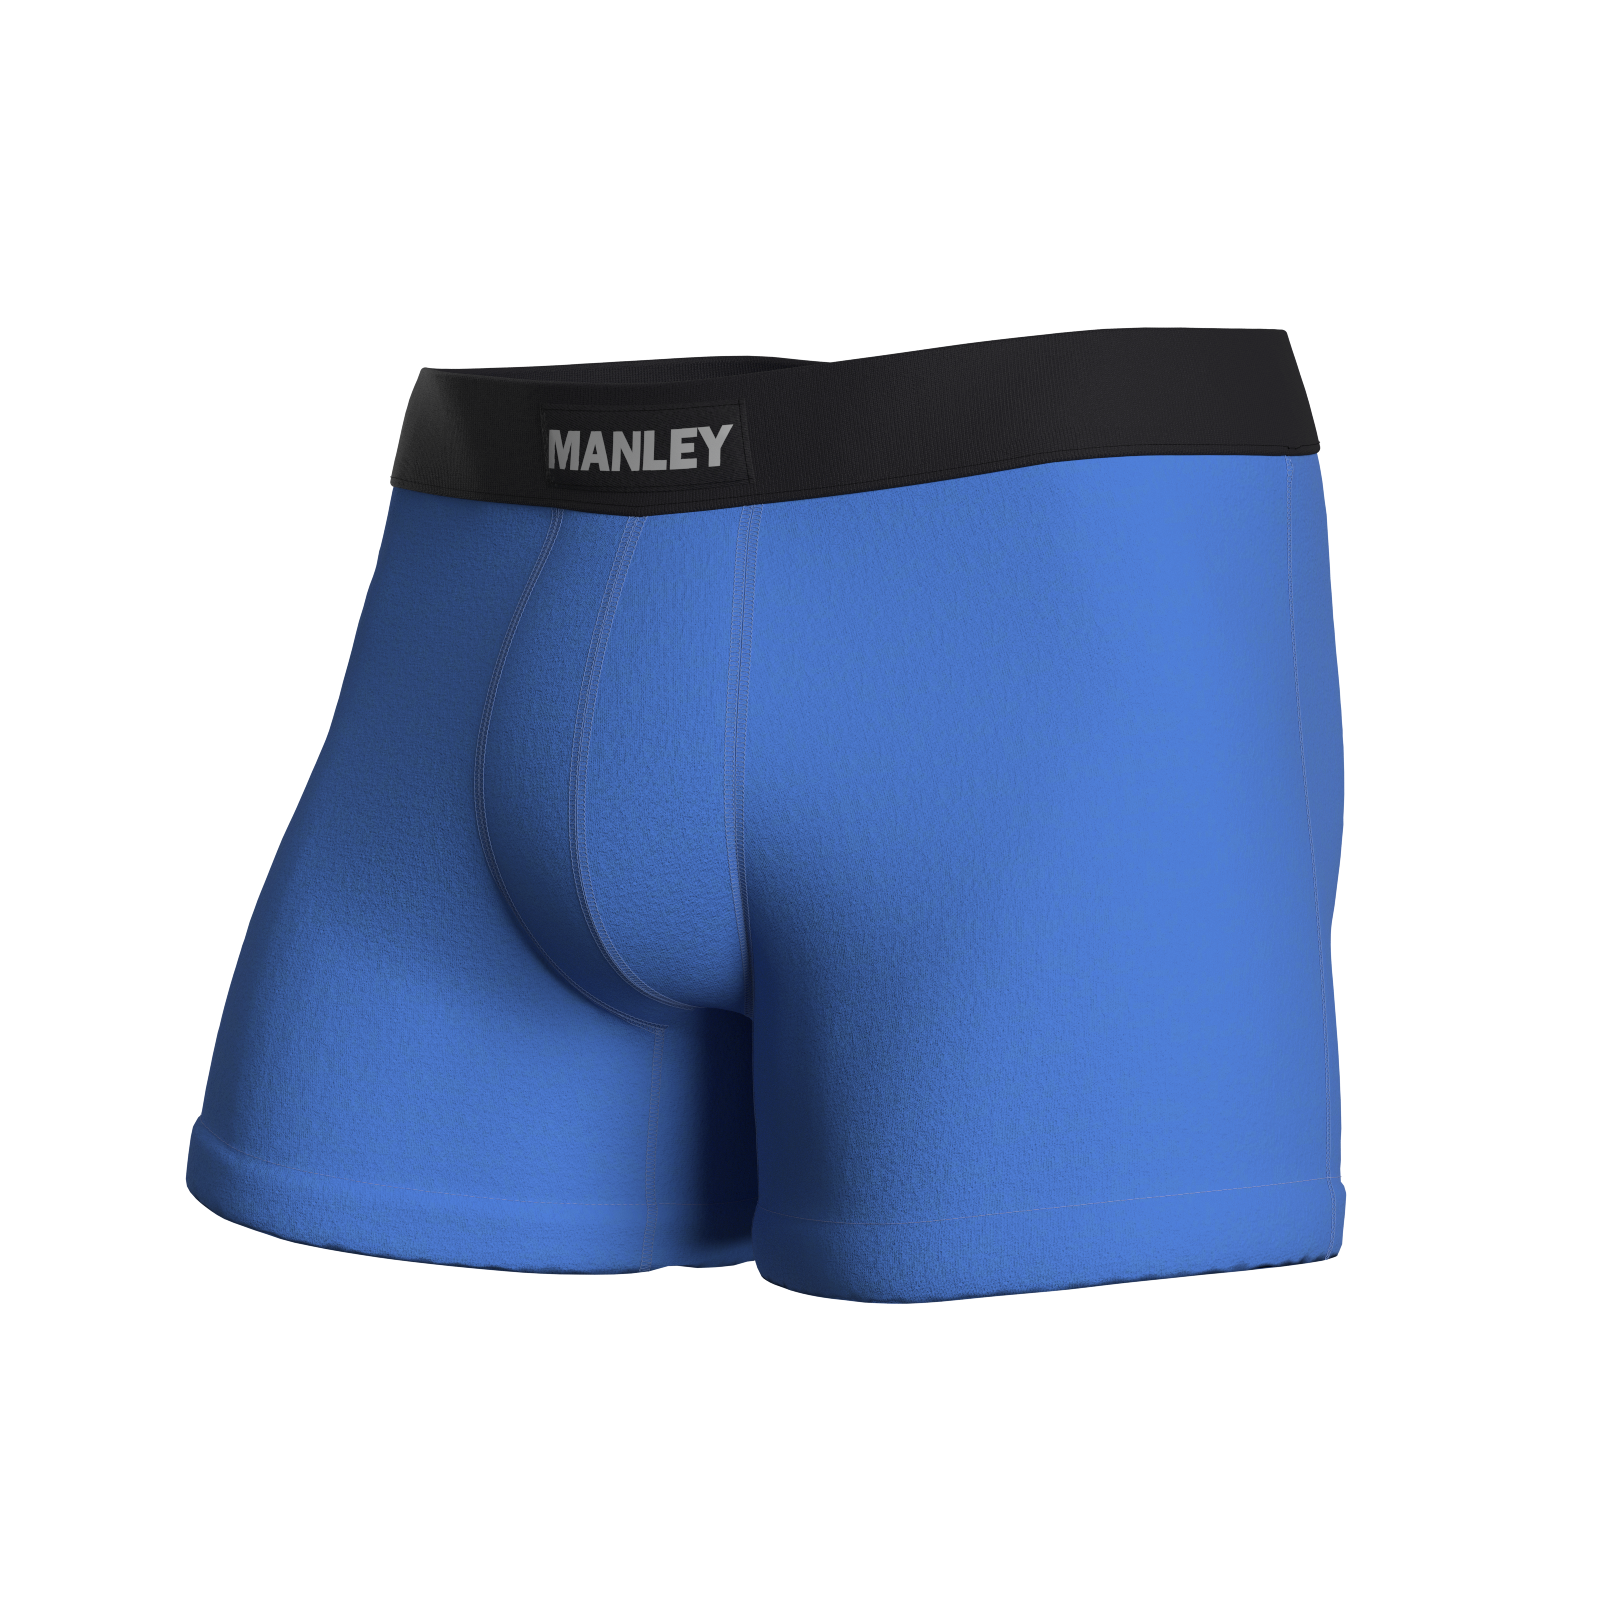 SAXX Underwear with Ballpark Pouch